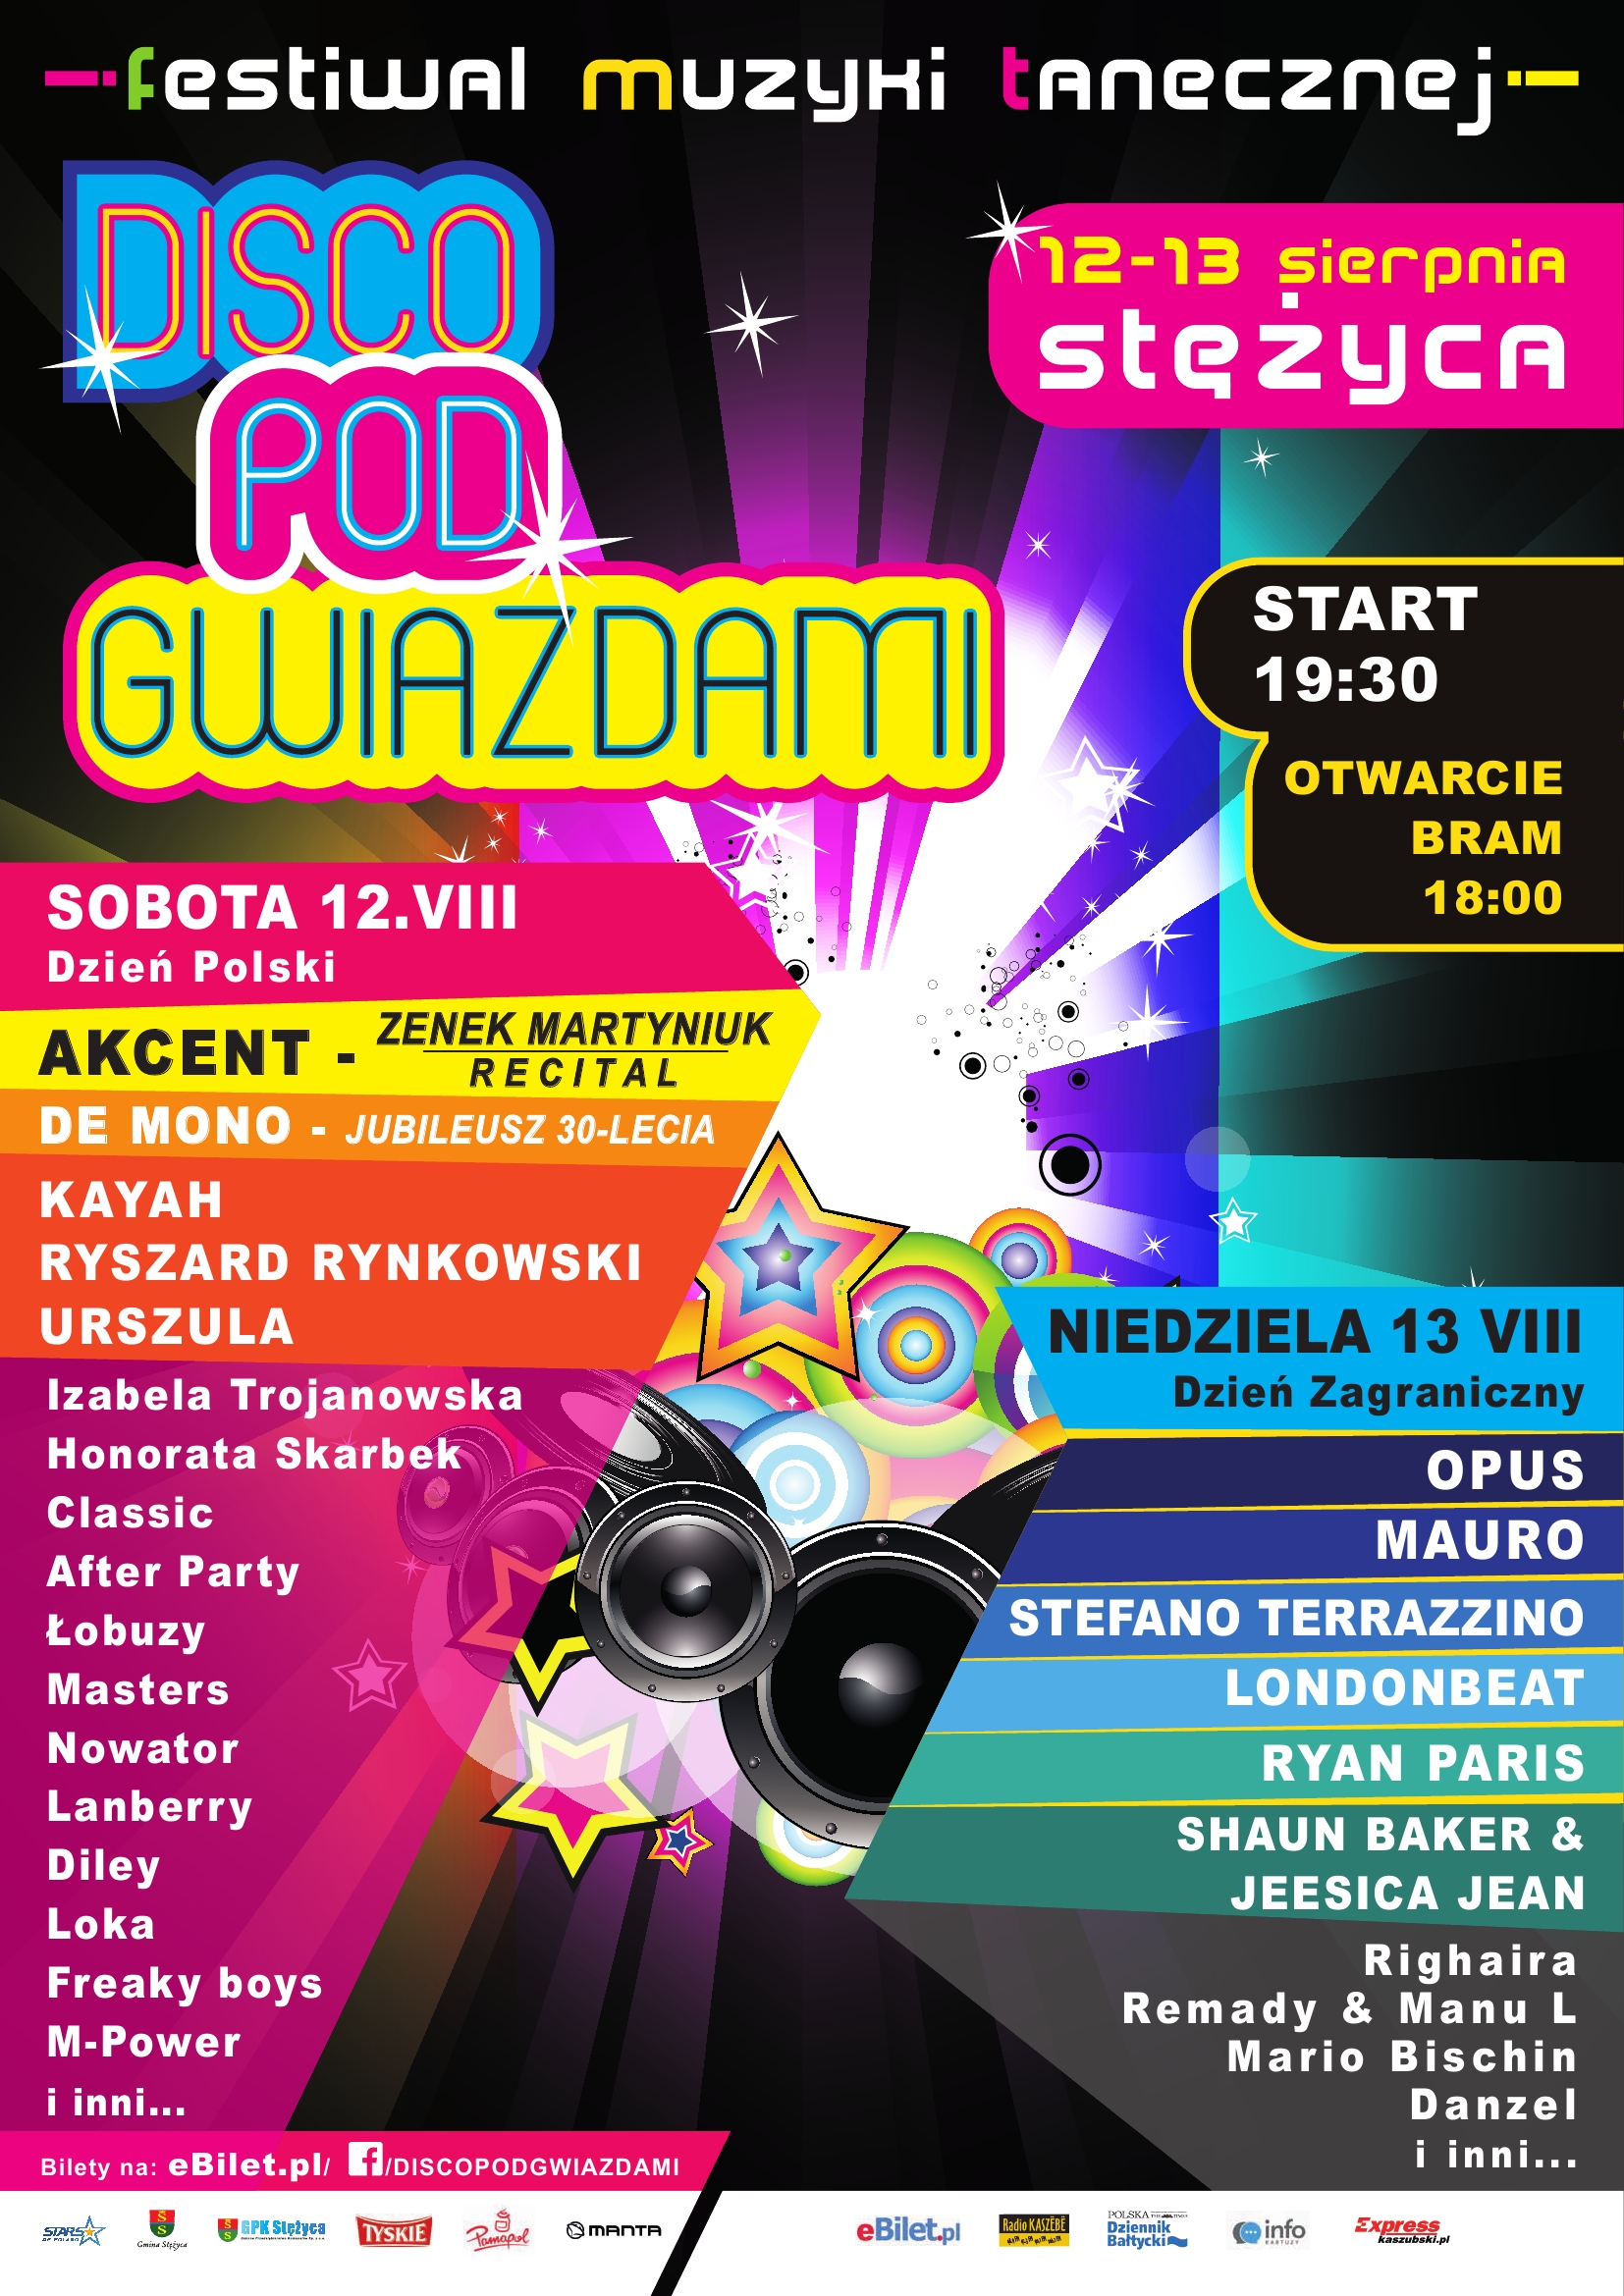 Disco pod Gwiazdami – dzień polski - 12.08.2017